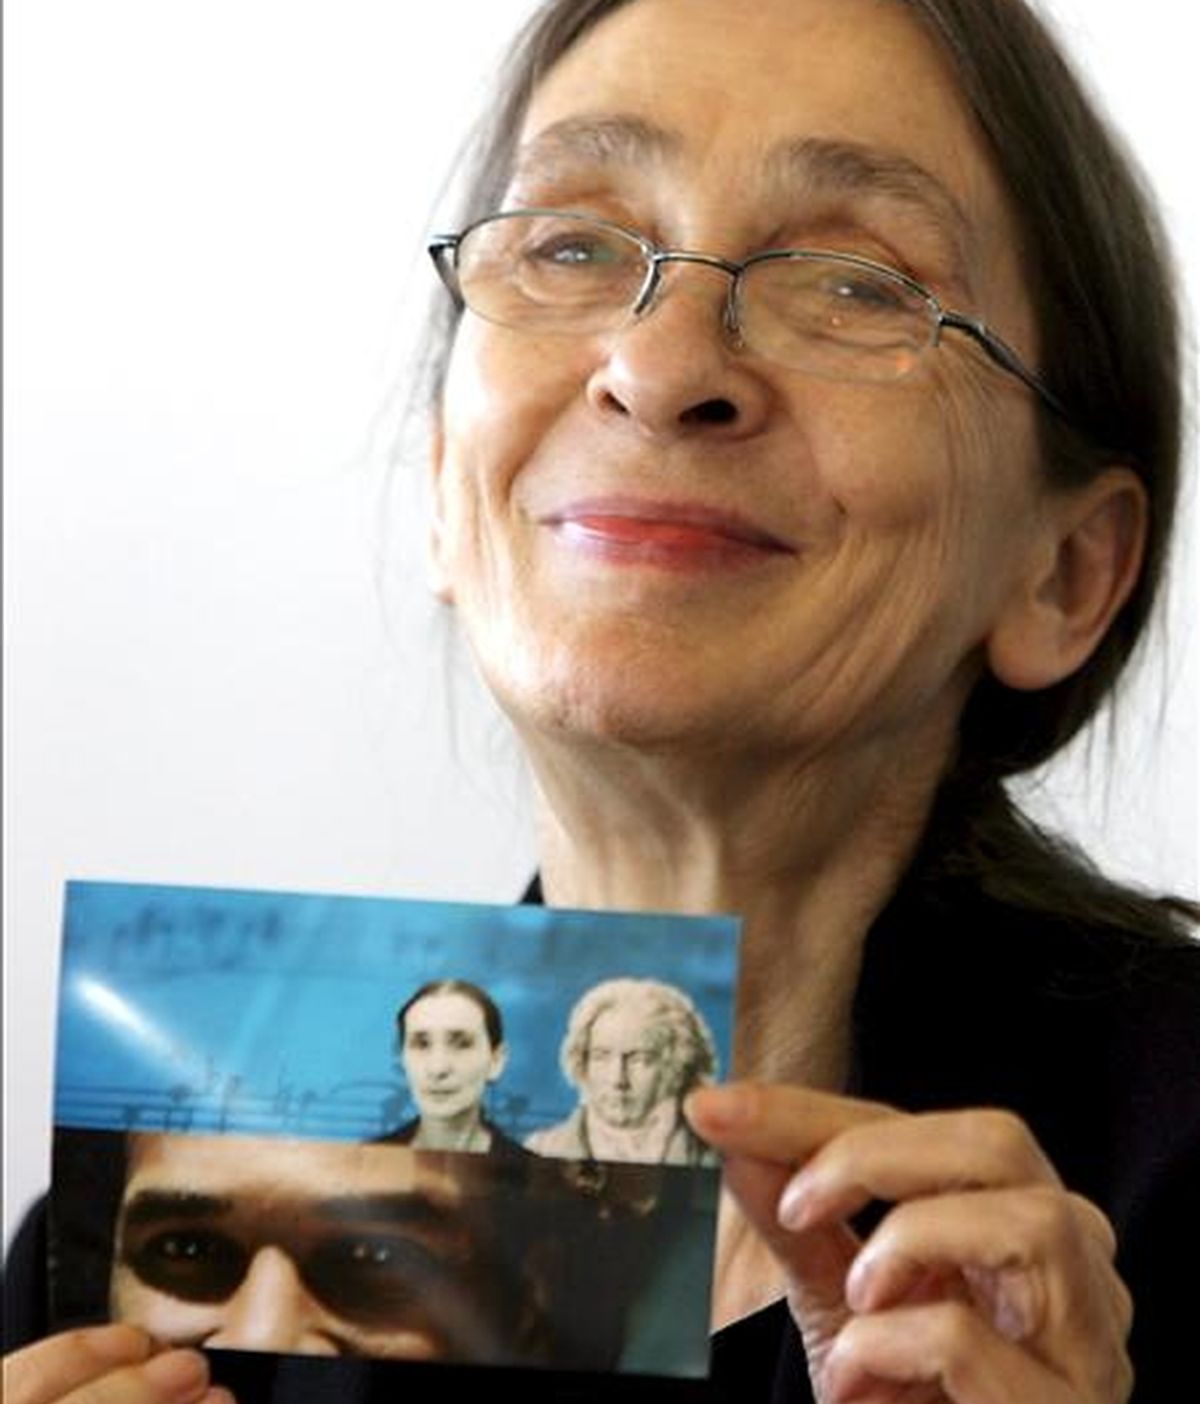 Foto de archivo, tomada el 22 de octubre de 2007, de la coreógrafa alemana Pina Bausch, en Dusseldorf, Alemania. Bausch murió hoy martes 30 de junio a los 68 años. EFE